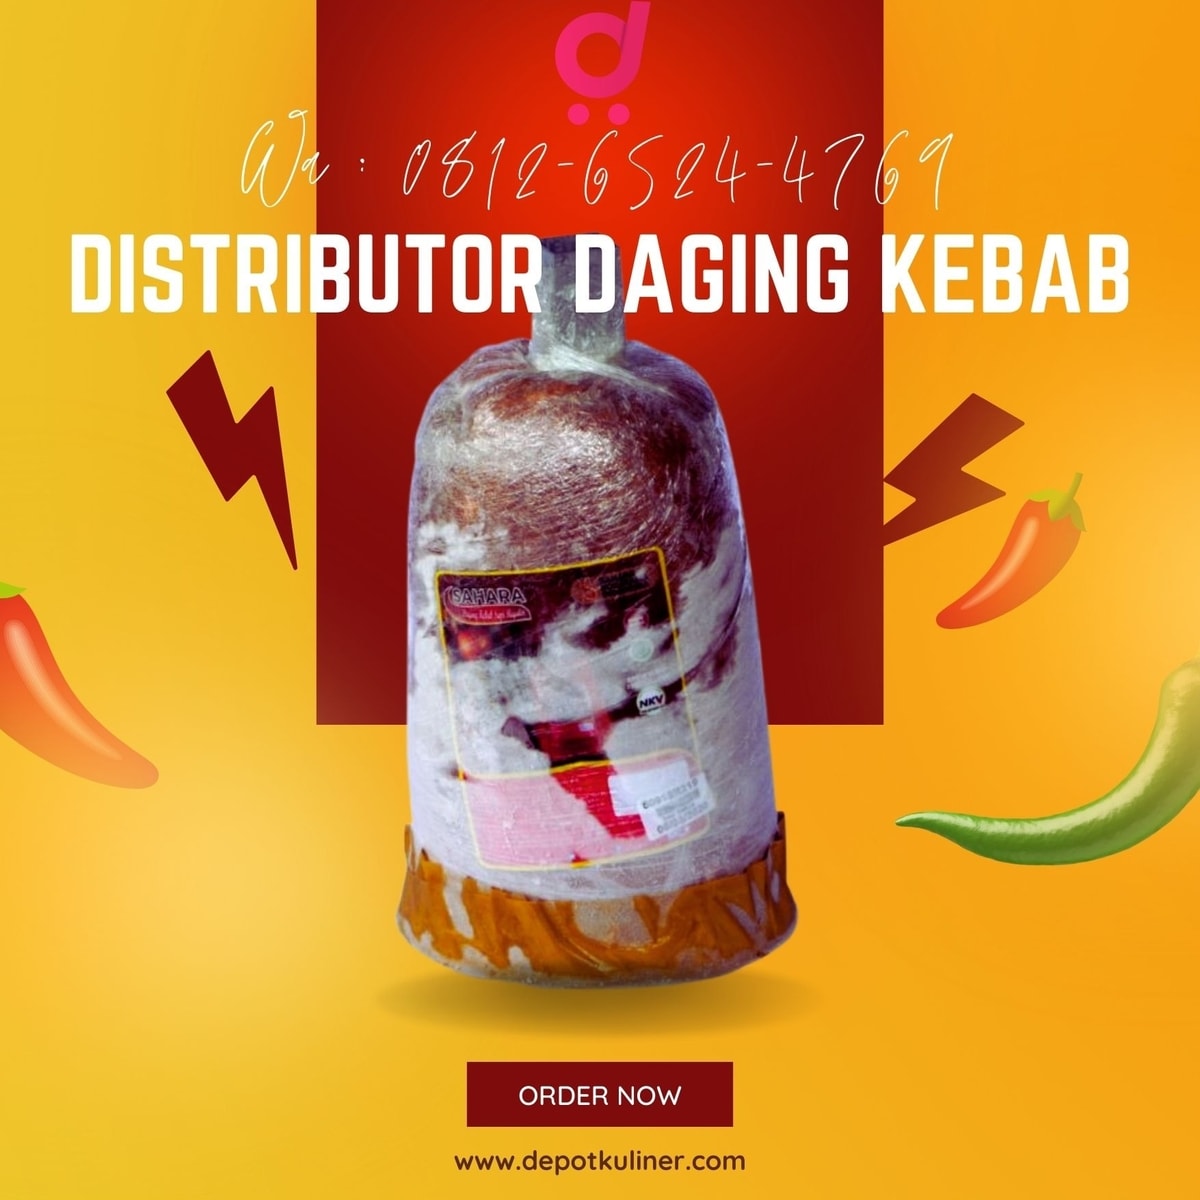 HARGA RESELLER, Call 0812-6524-4769, Distributor Daging Kebab